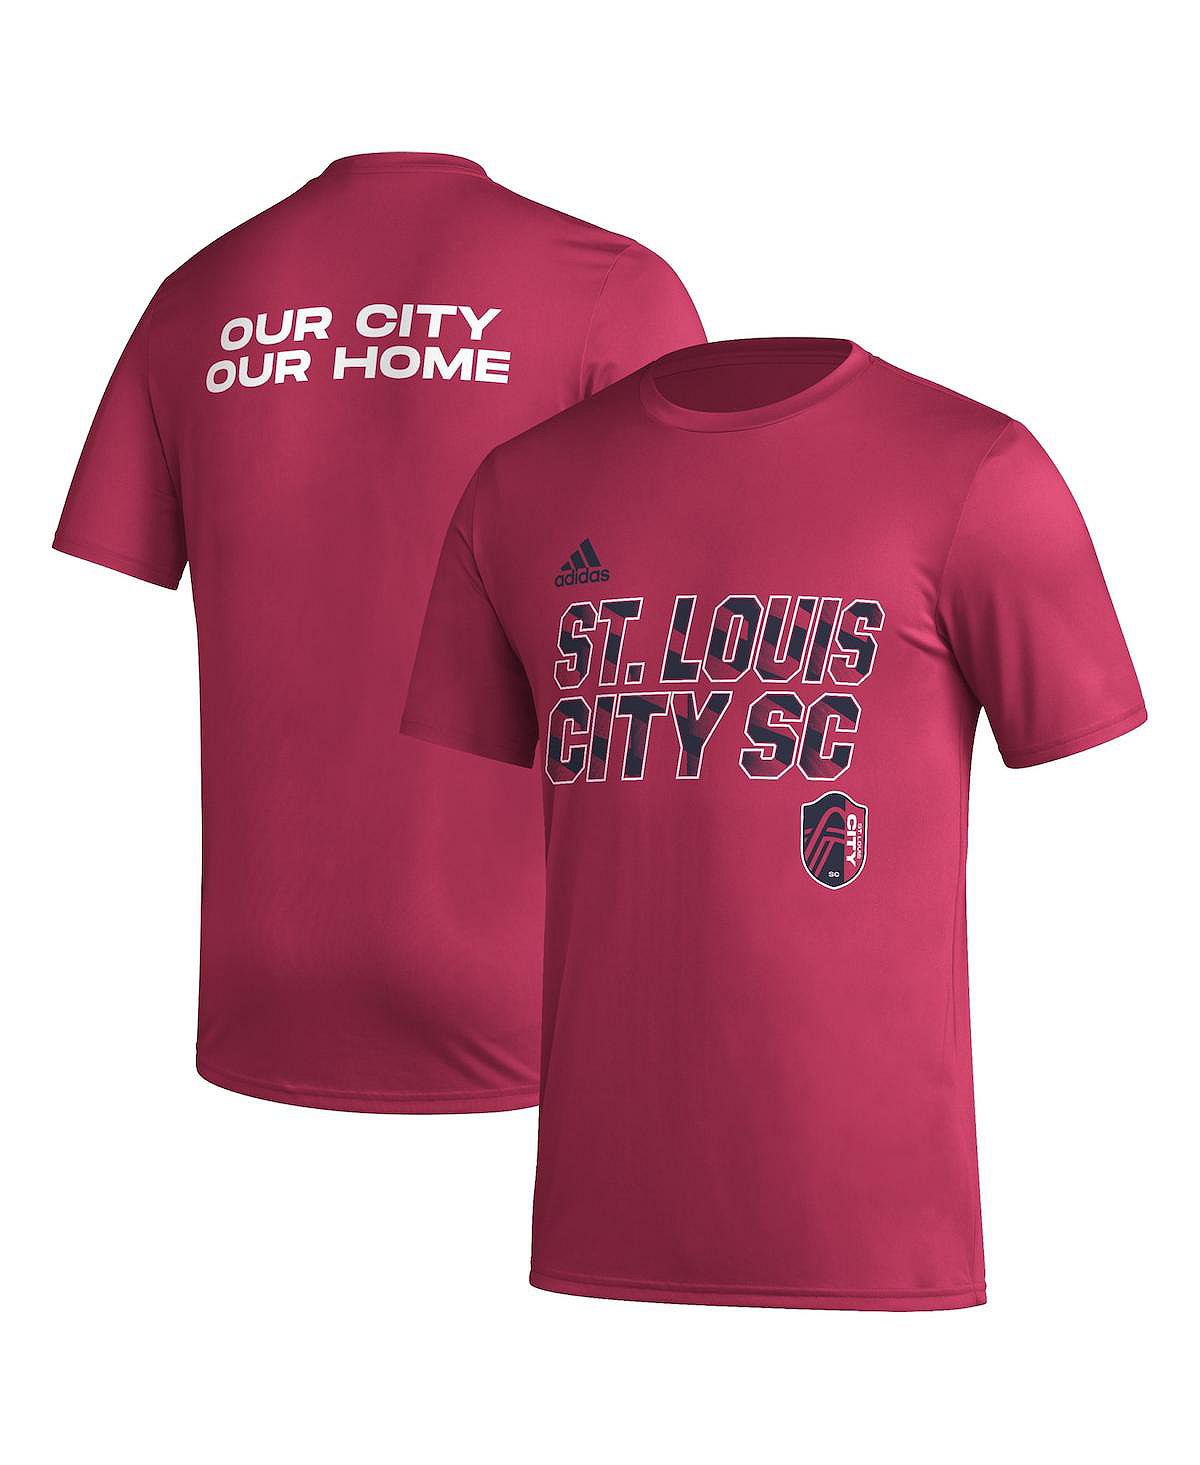 Мужская красная футболка St. Louis City SC Team с крючками AEROREADY adidas